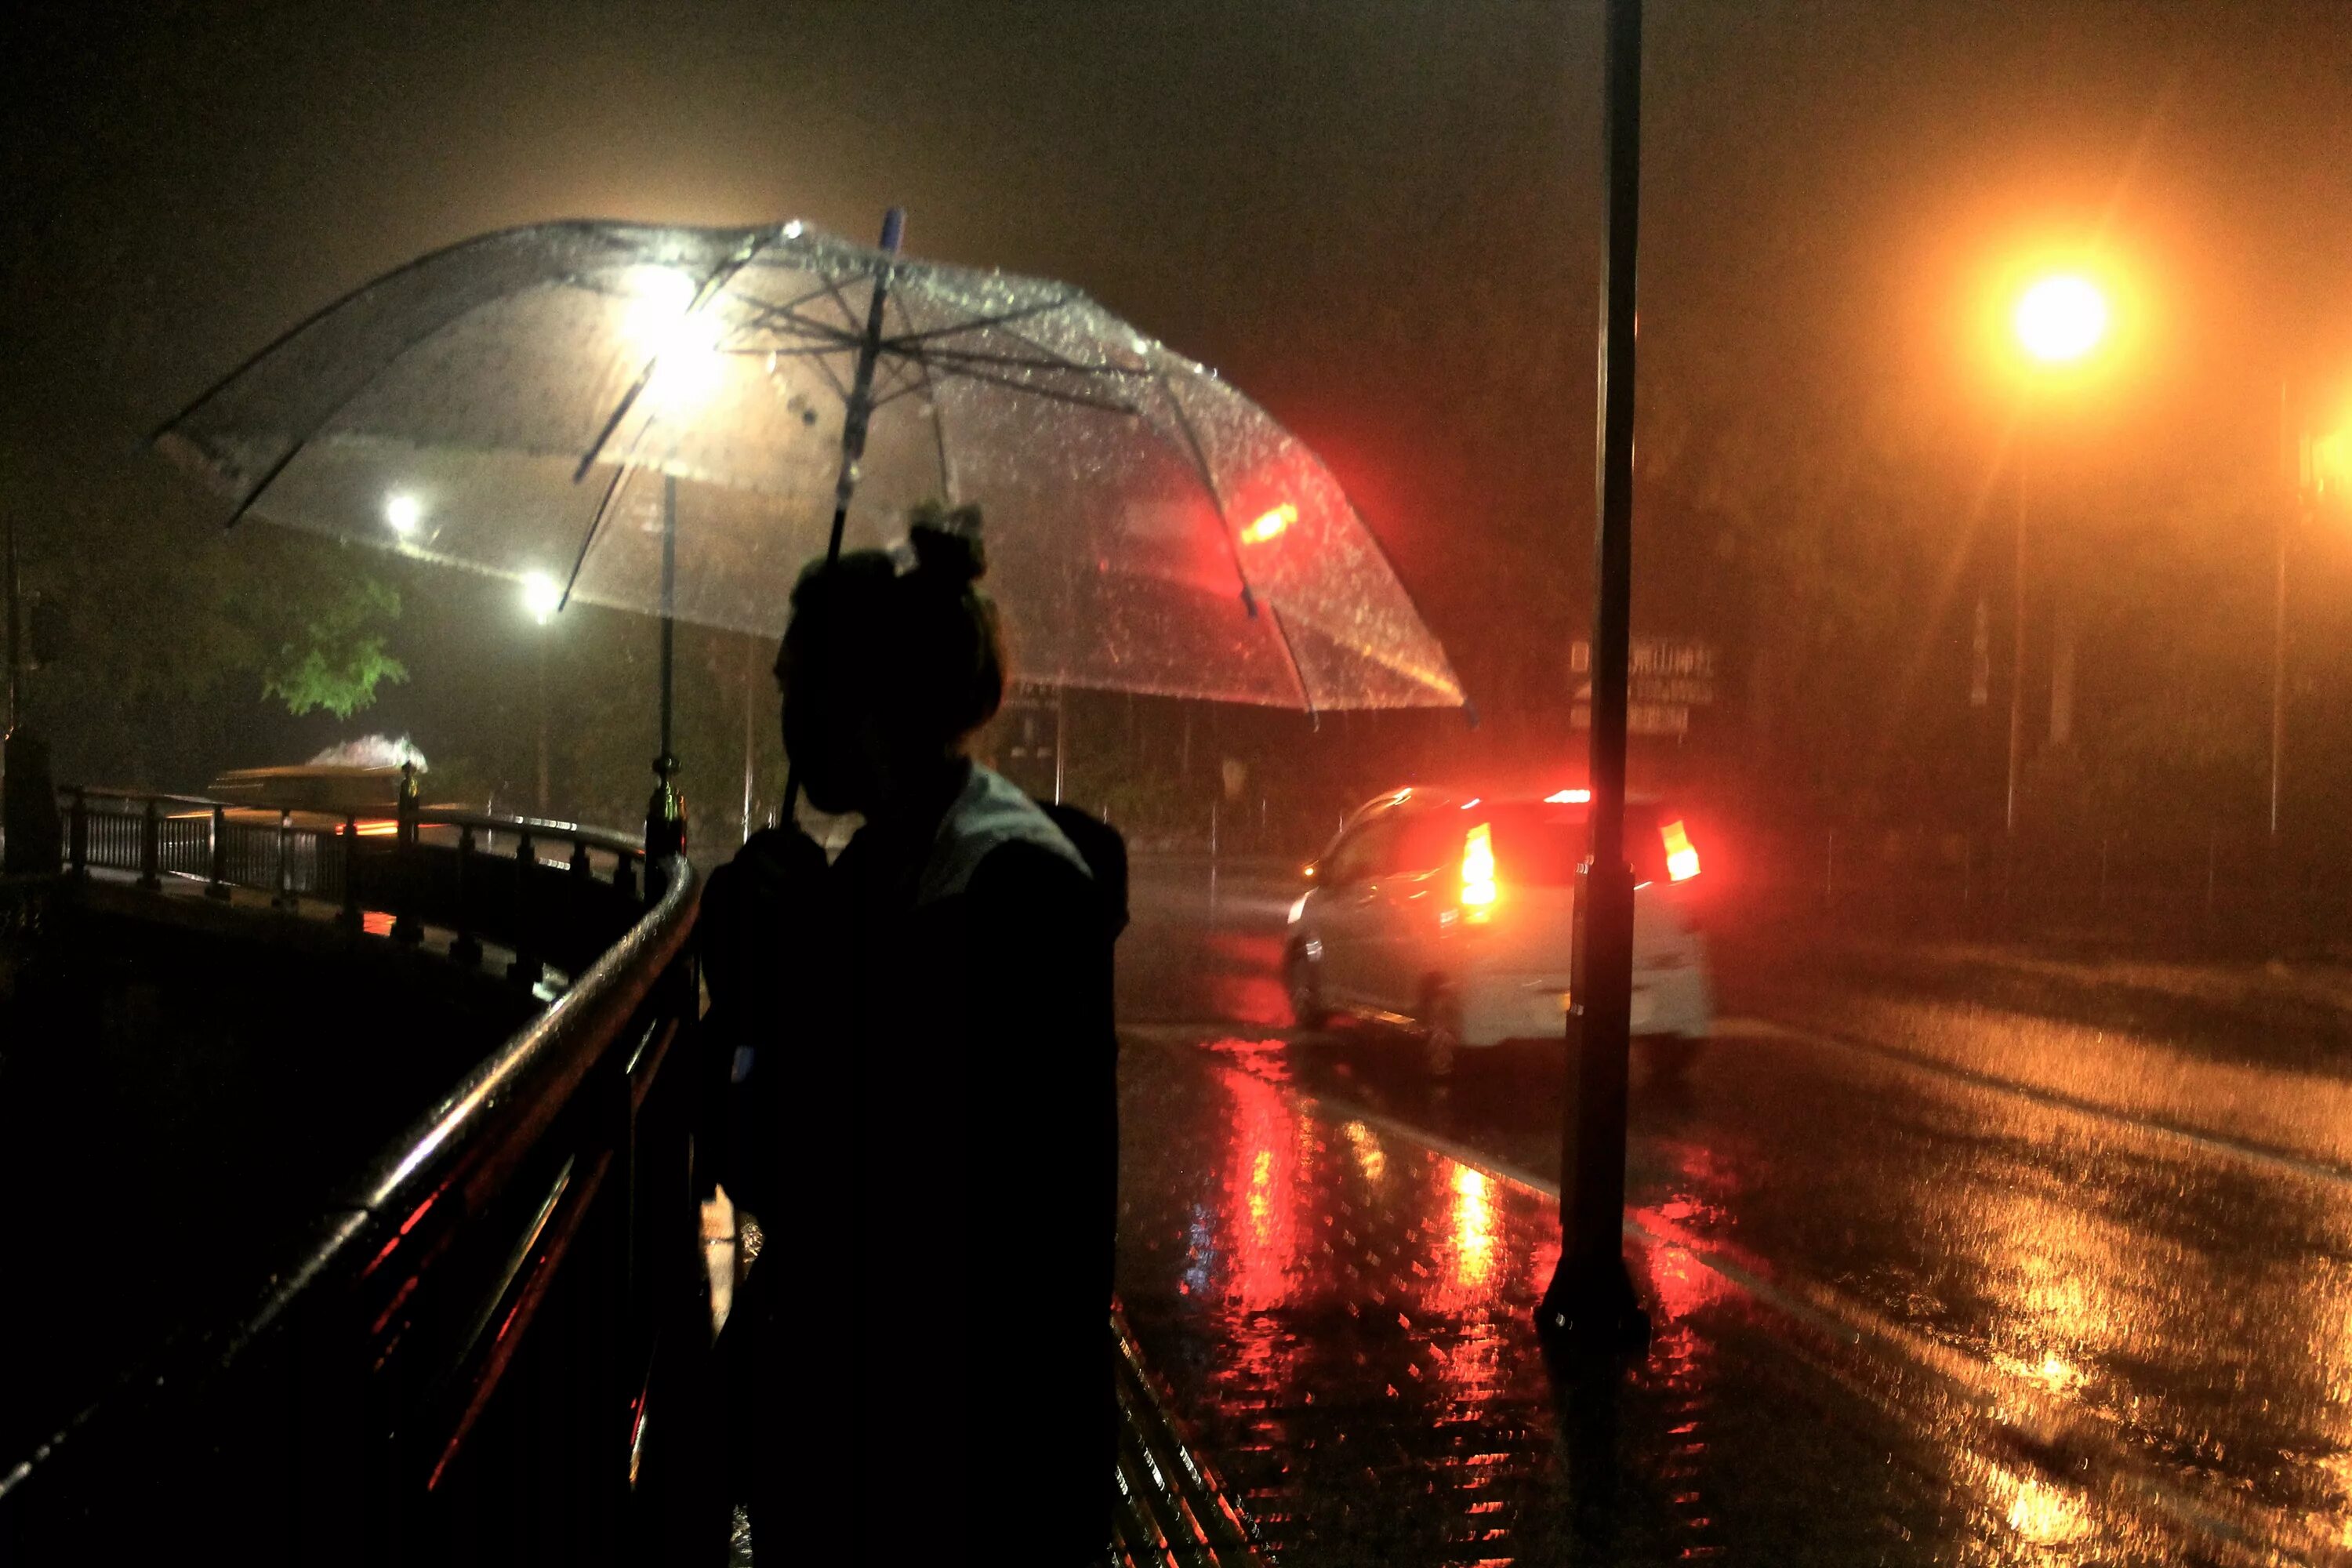 За окном дождь ночь фонари тает первый. Дождь ночью. Человек под зонтом. Город ночью под дождем. "Дождливый вечер".